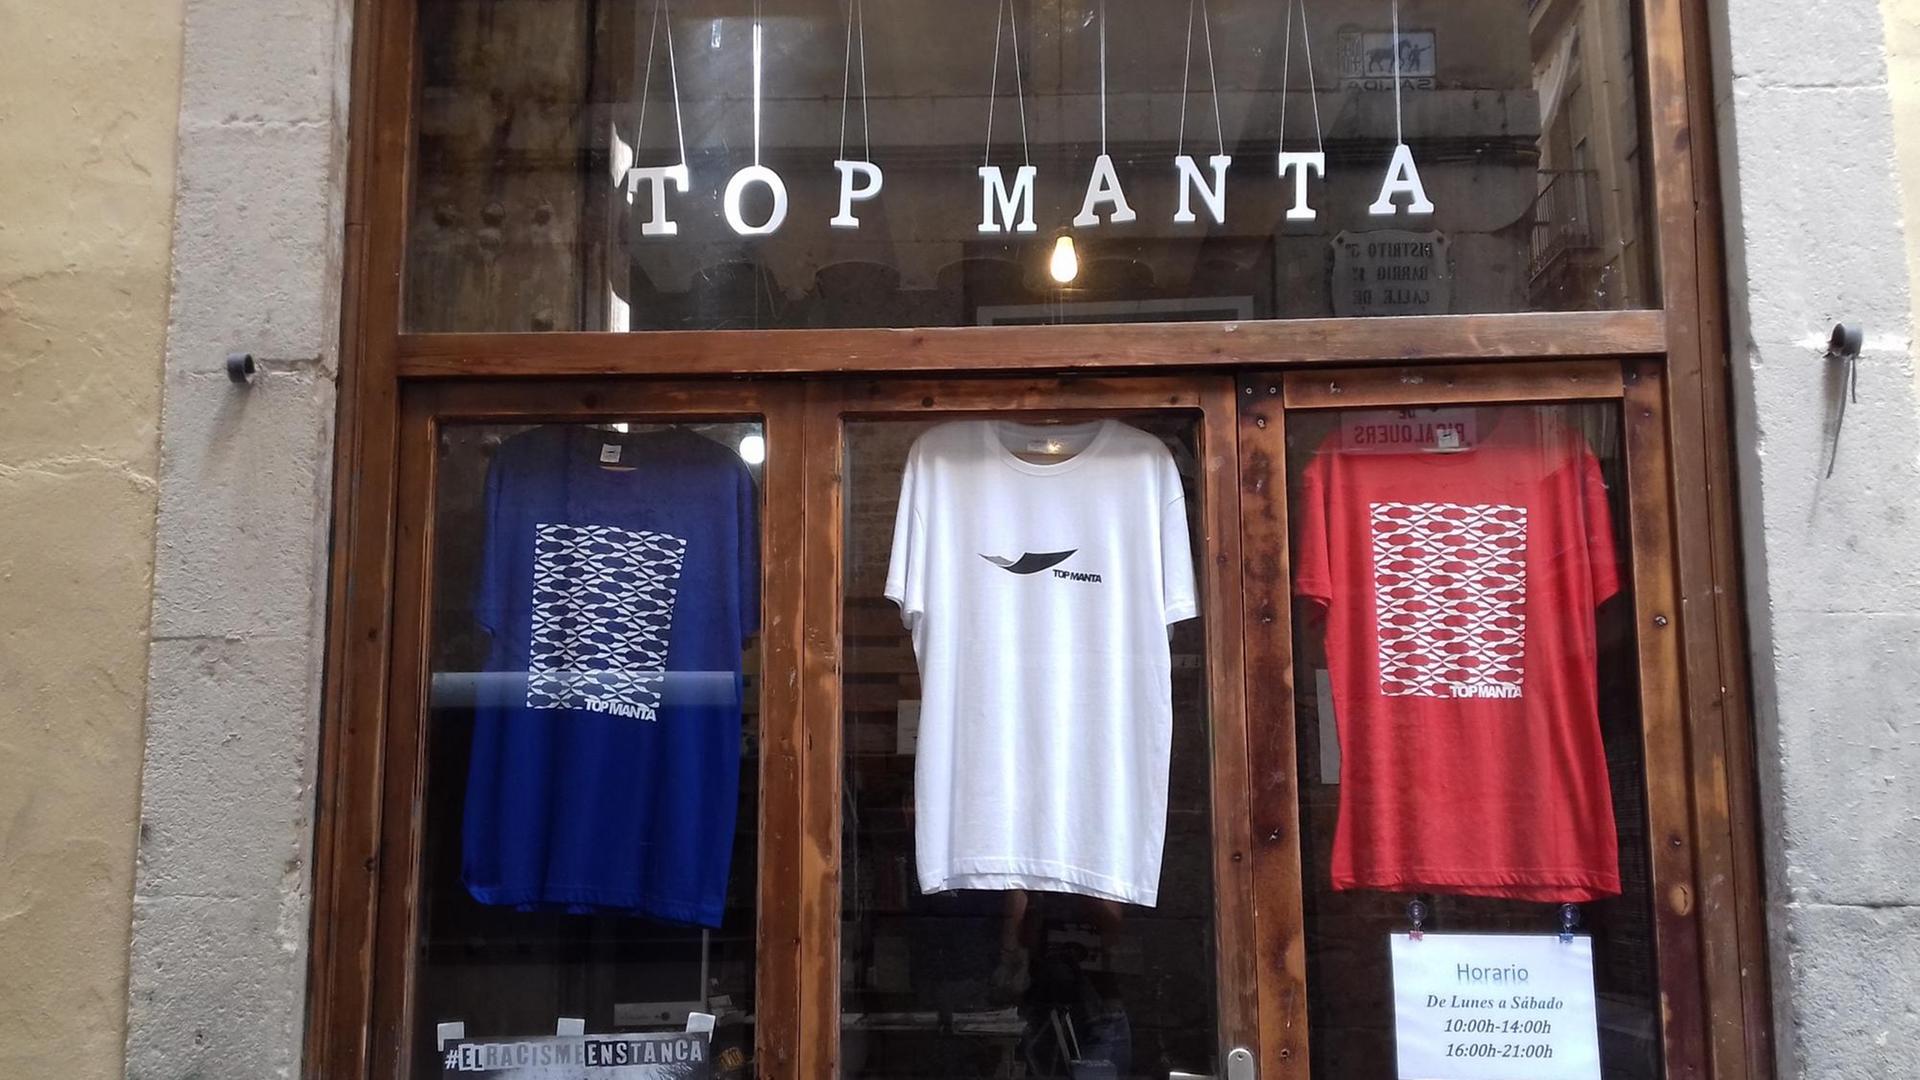 Der Shop der Straßenhändler von Barcelona. Im Schaufenster hängen drei T-Shirts des Labels "Top Manta"